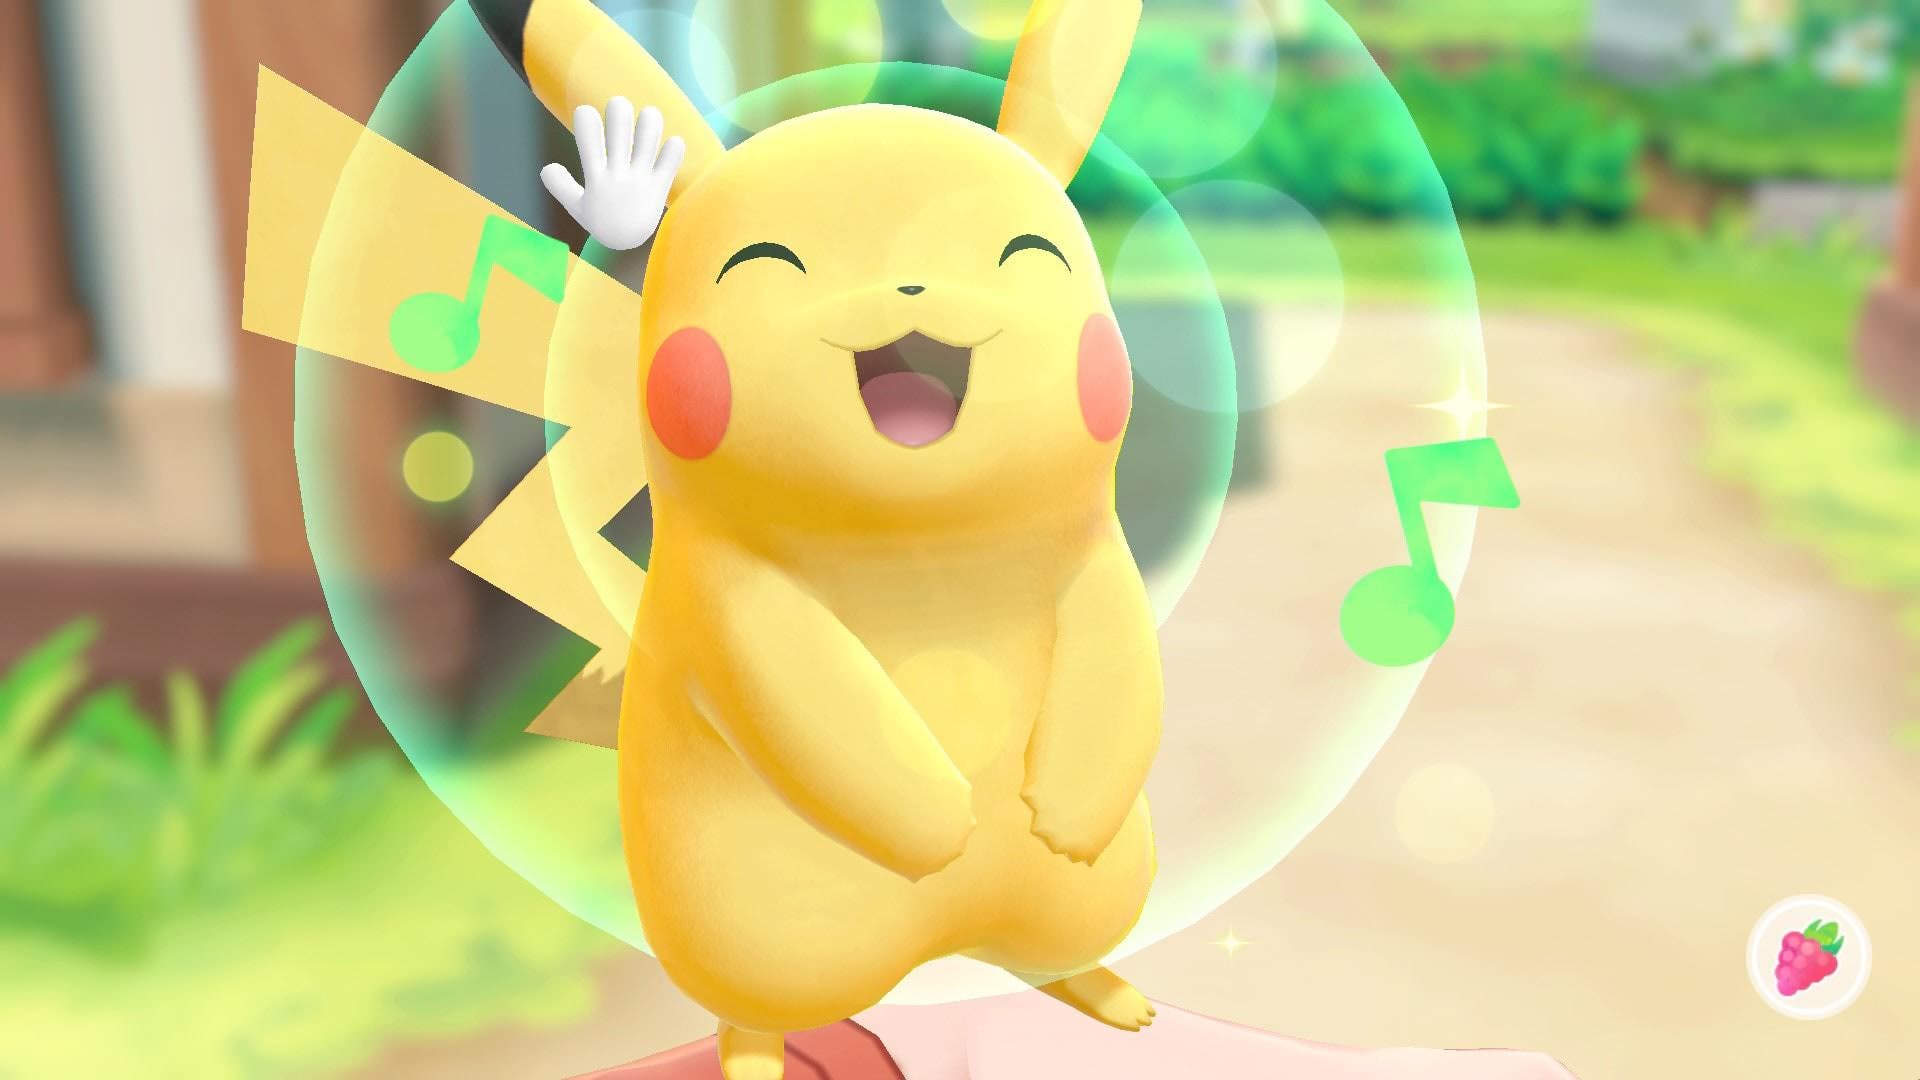 Echa un vistazo a los iconos oficiales de Pokemon Let’s GO Pikachu/Eevee en Nintendo Switch